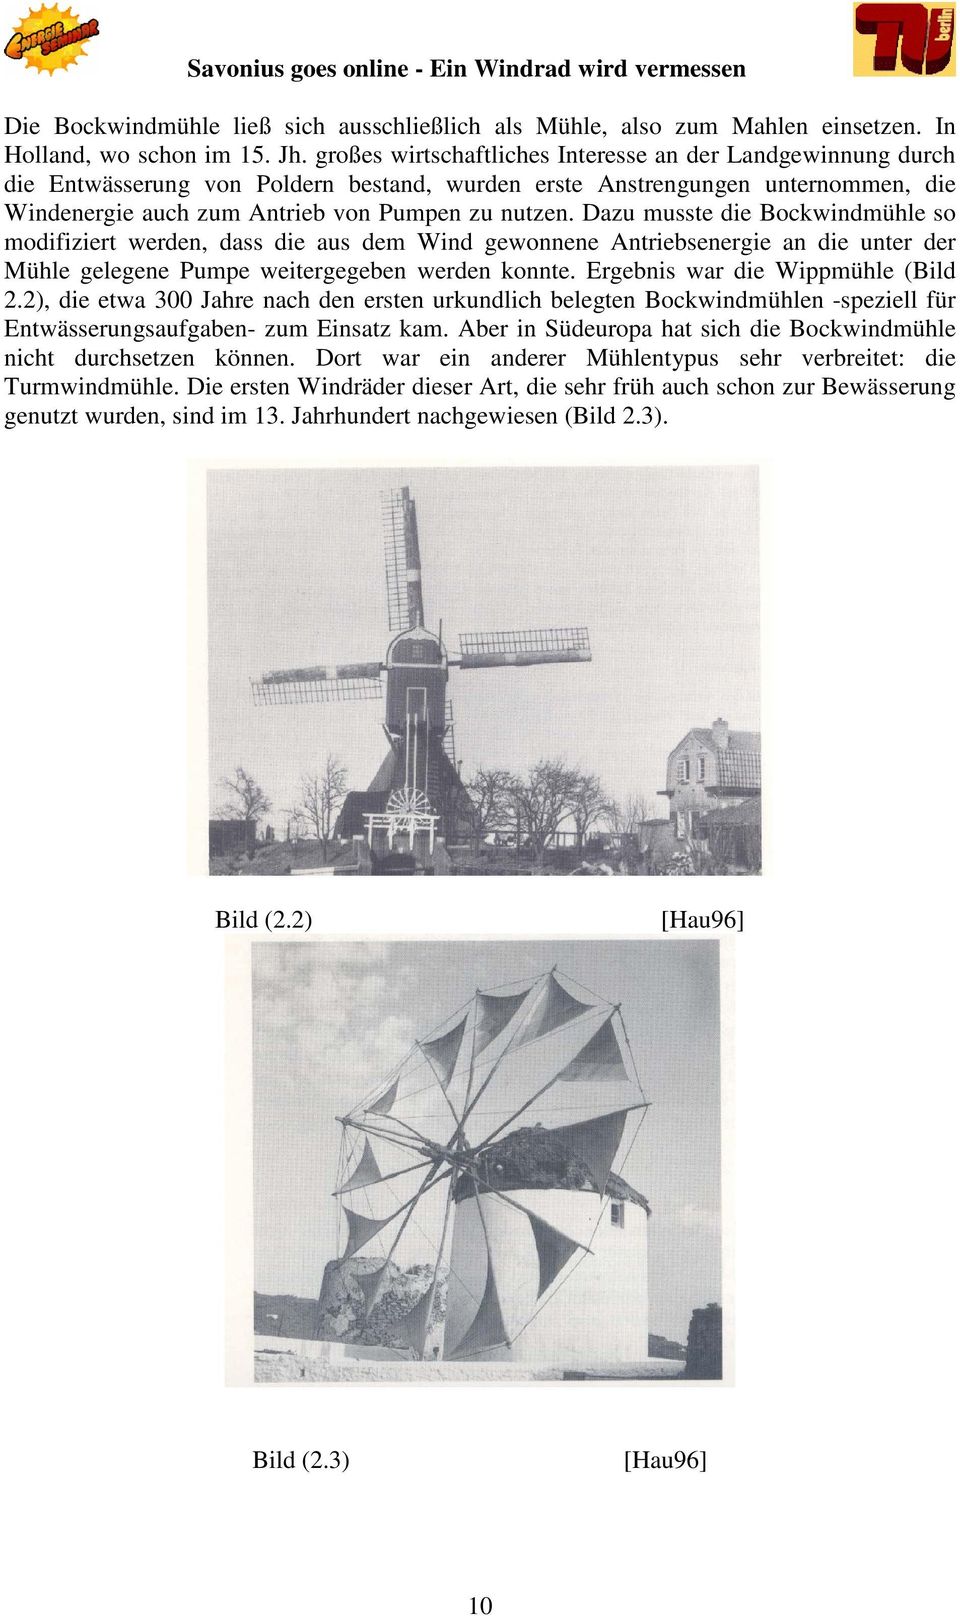 Dazu musste die Bockwindmühle so modifiziert werden, dass die aus dem Wind gewonnene Antriebsenergie an die unter der Mühle gelegene Pumpe weitergegeben werden konnte.